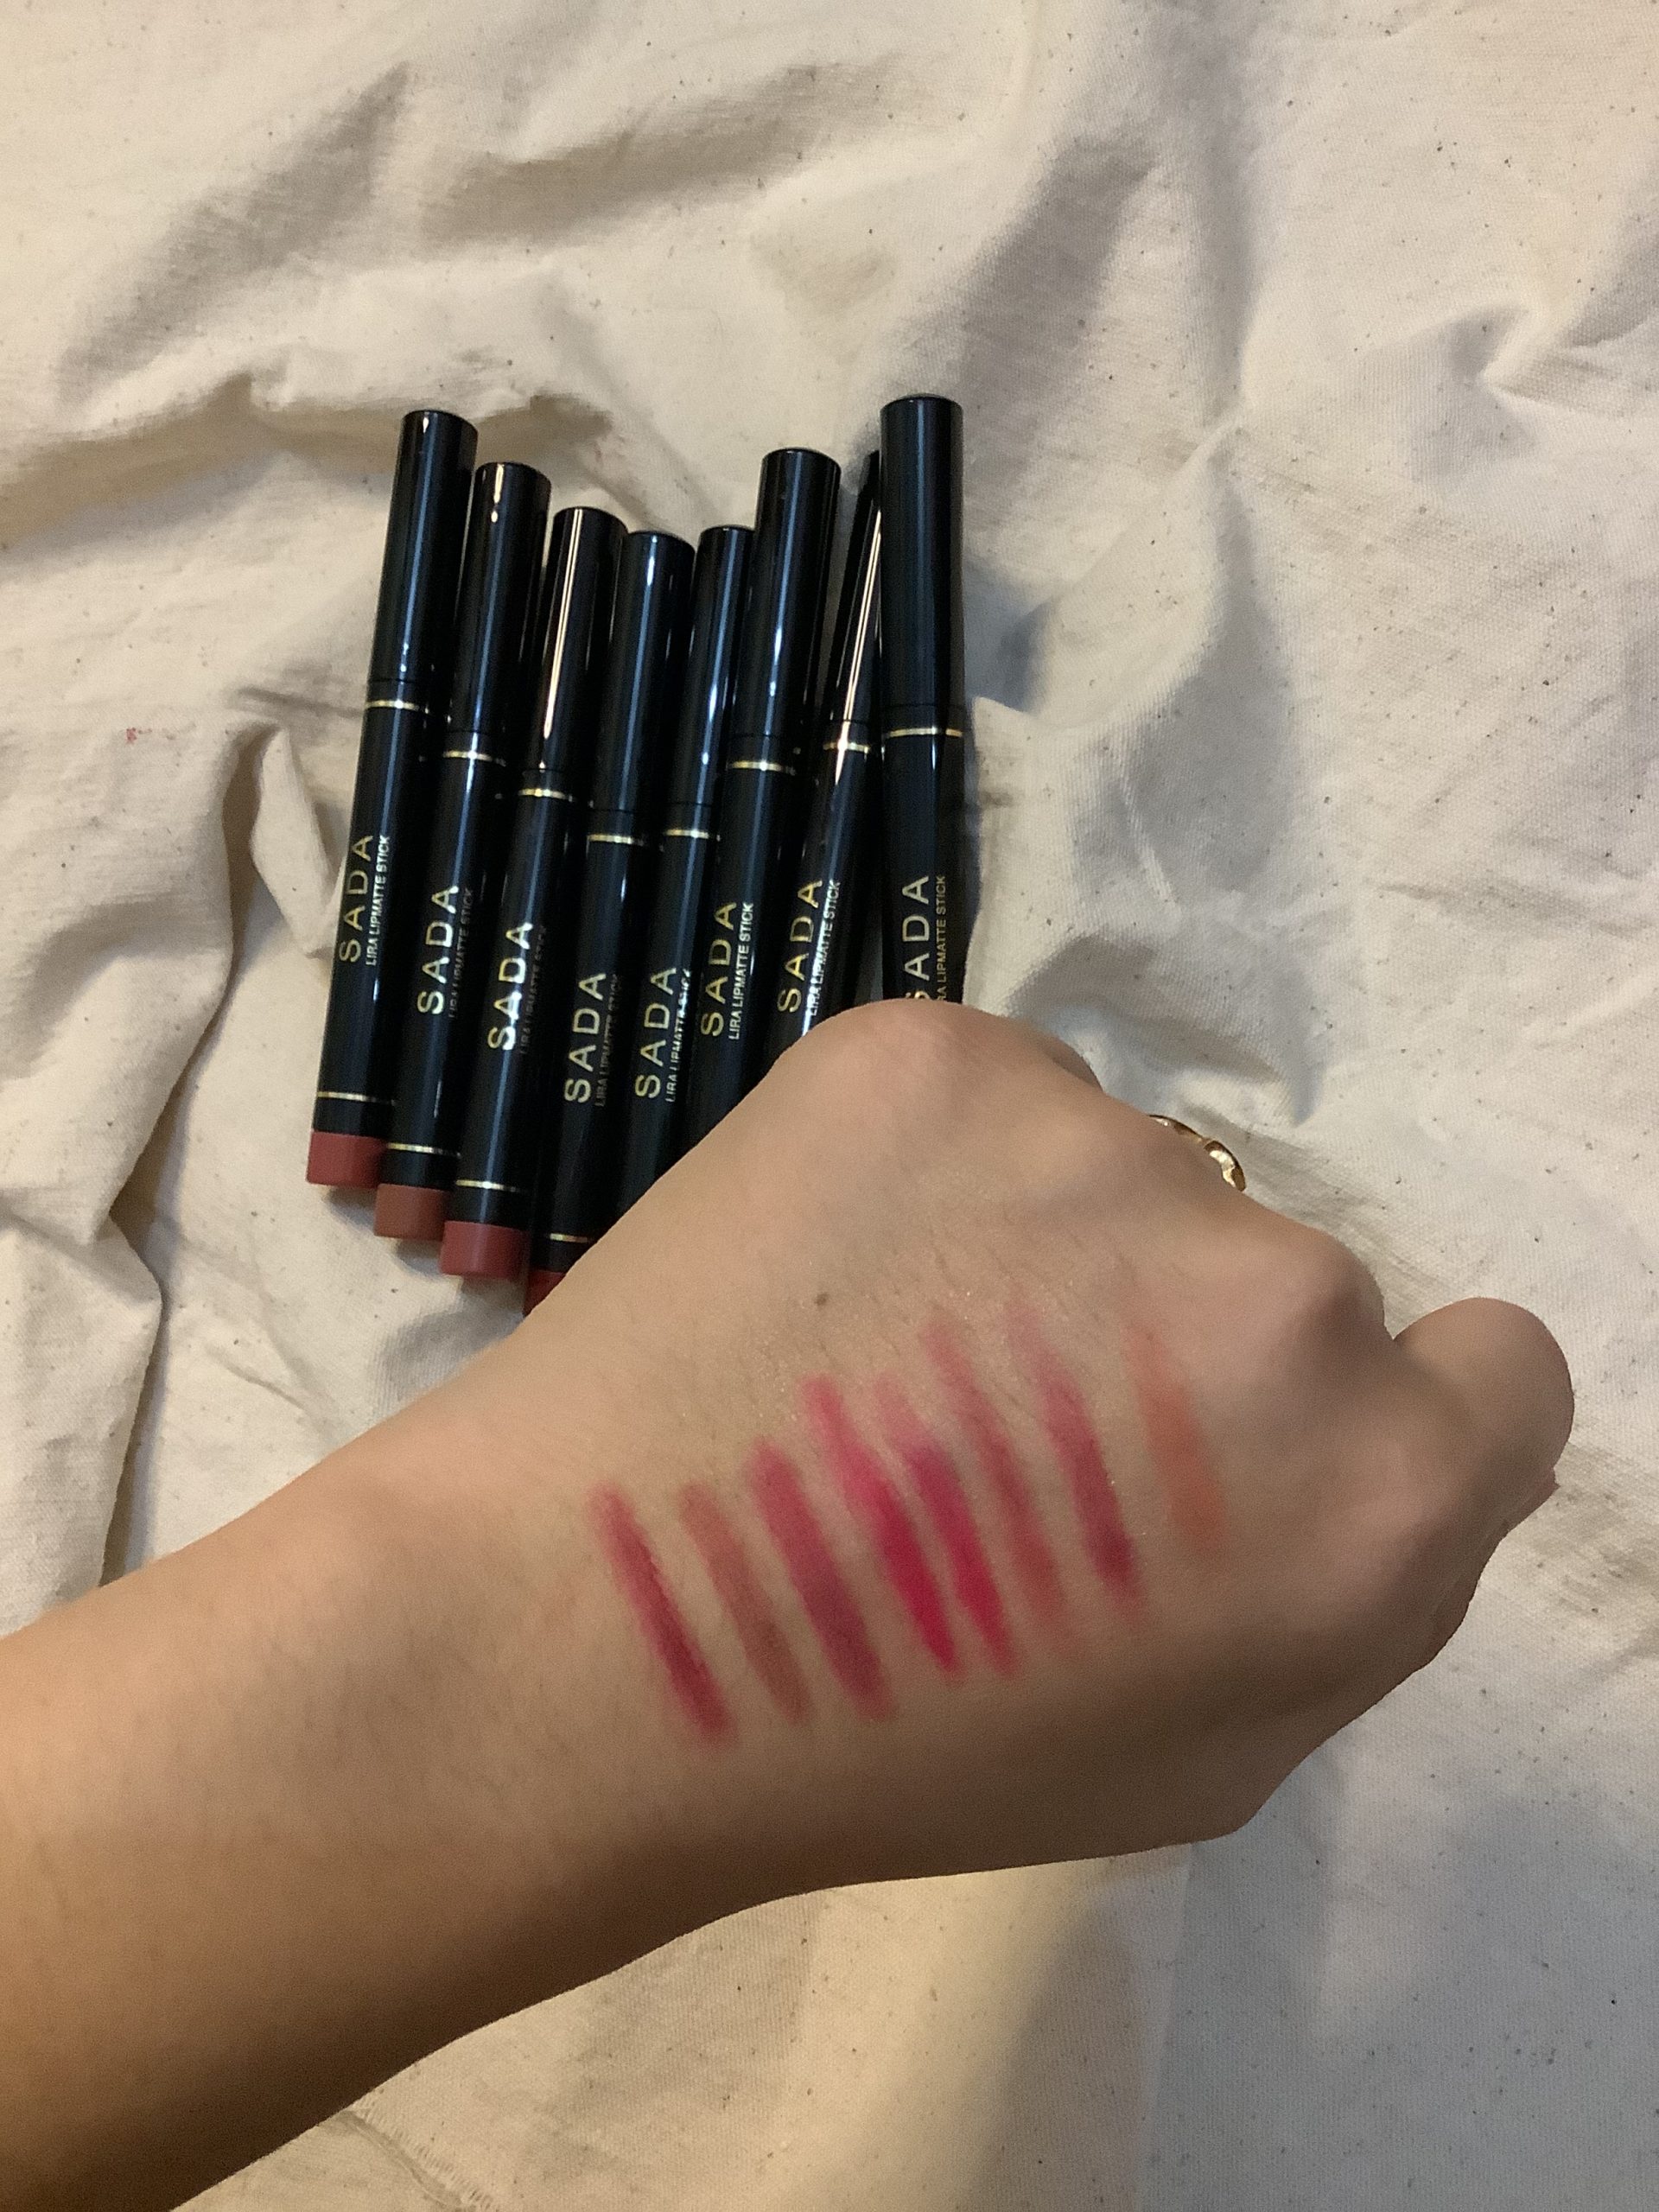 lipstick SADA, review lipstick SADA, SADA makeup